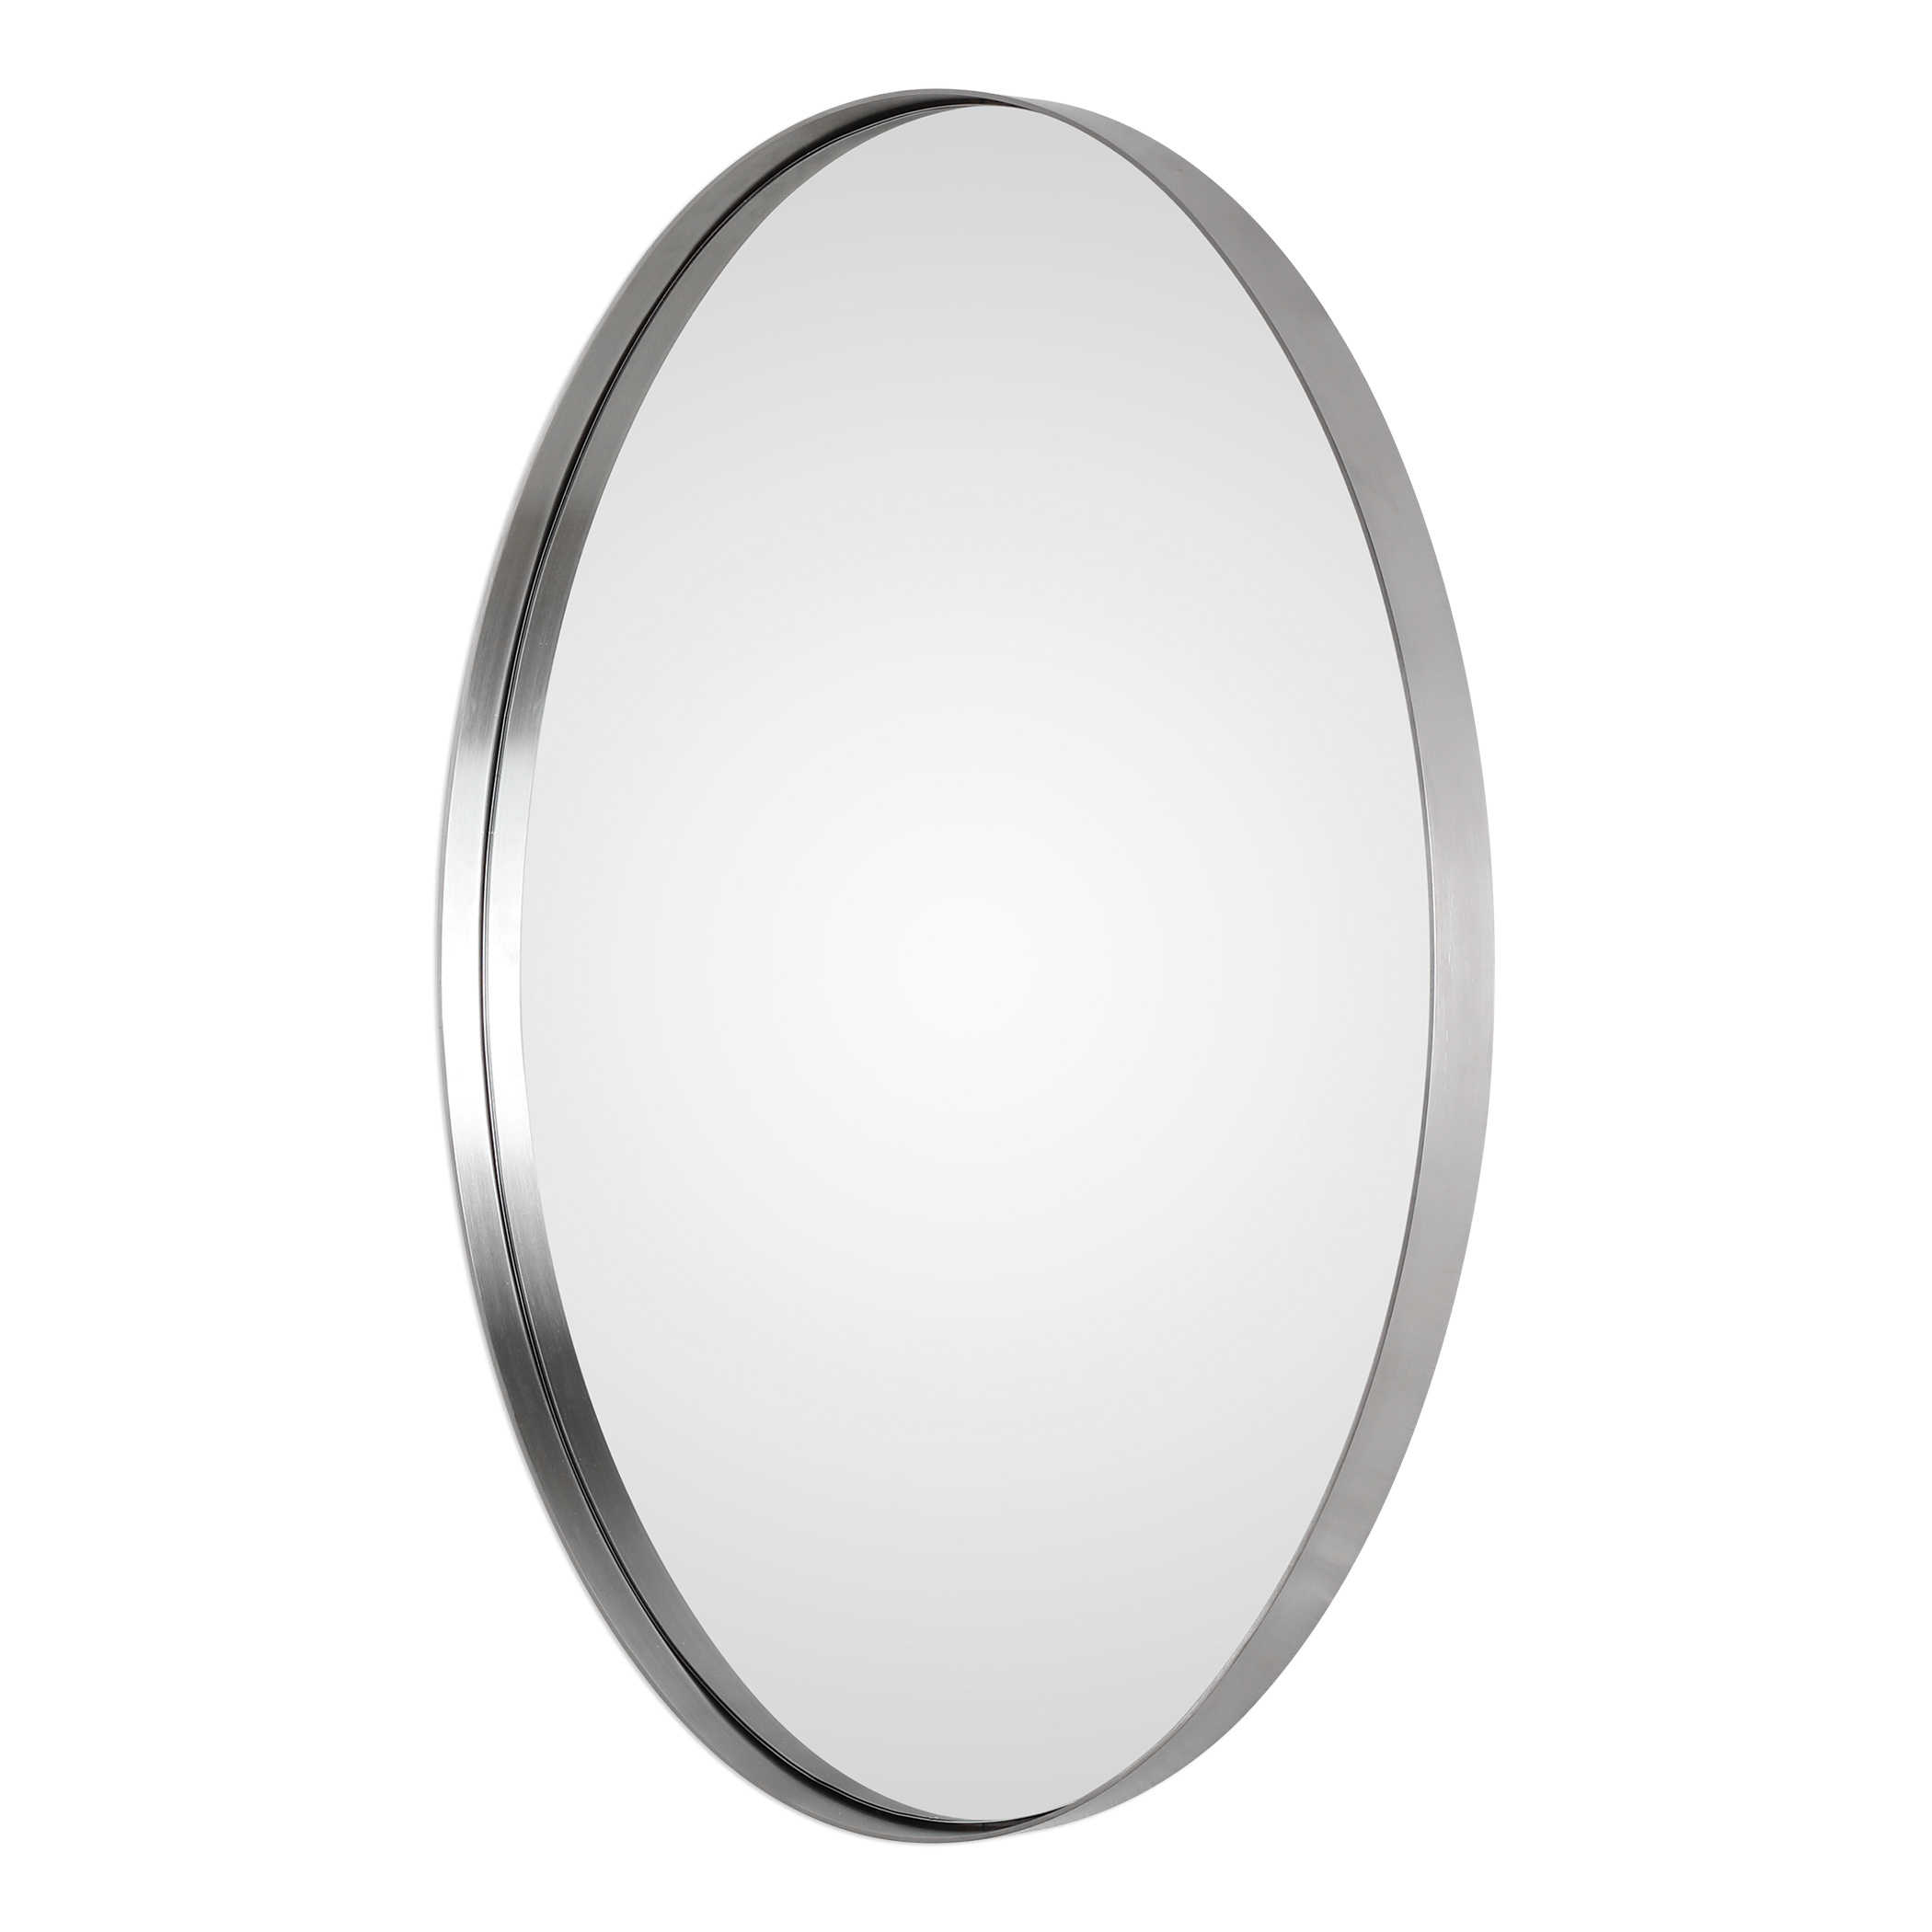 Pursley Brushed Nickel Oval Mirror, Polished Nickel Oval Bathroom Mirror